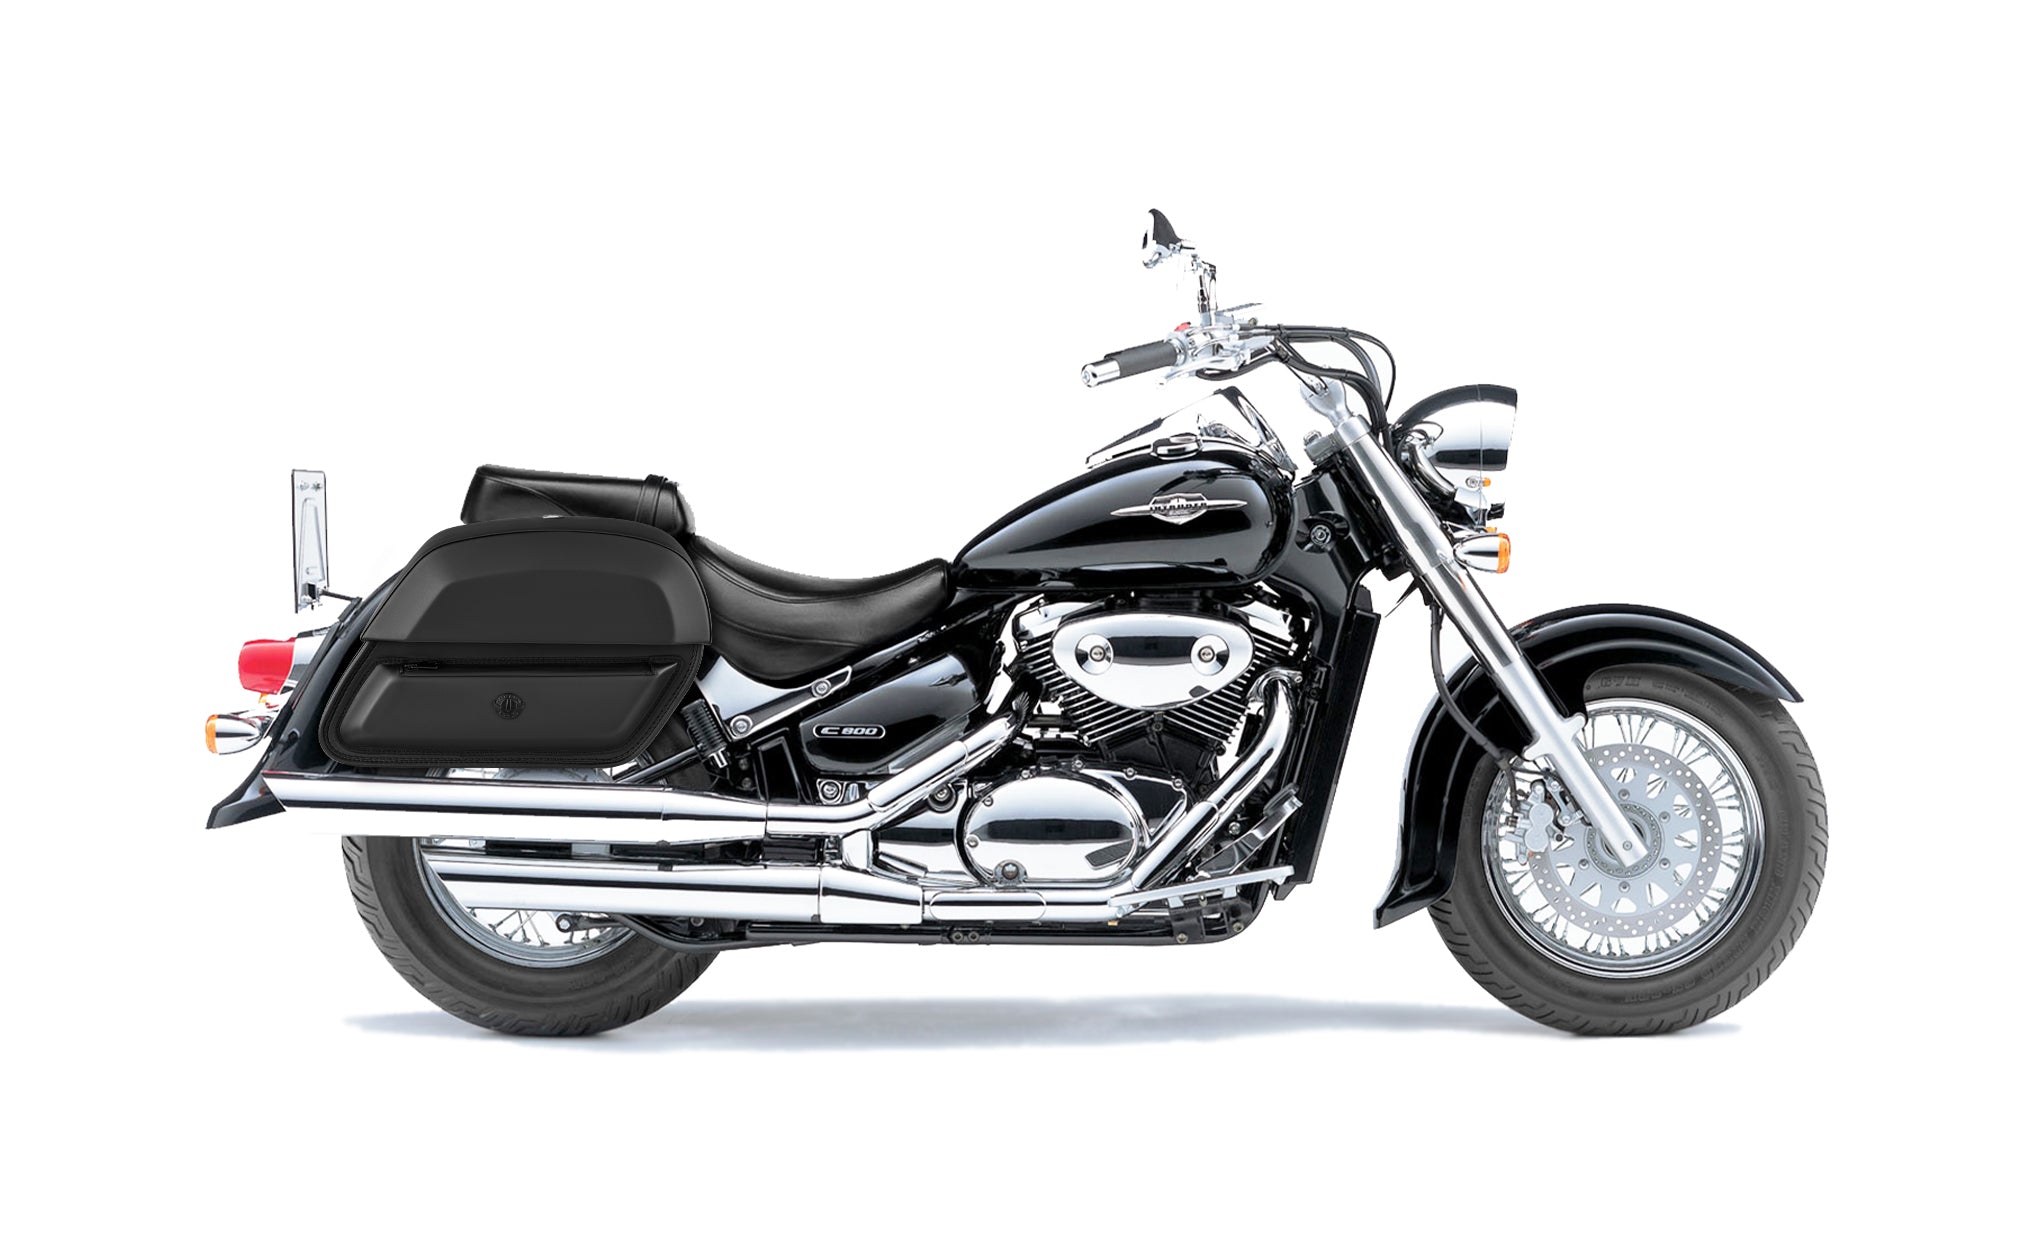 28L - Wraith Medium Suzuki Volusia 800 Leather Motorcycle Saddlebags BAG on Bike View @expand